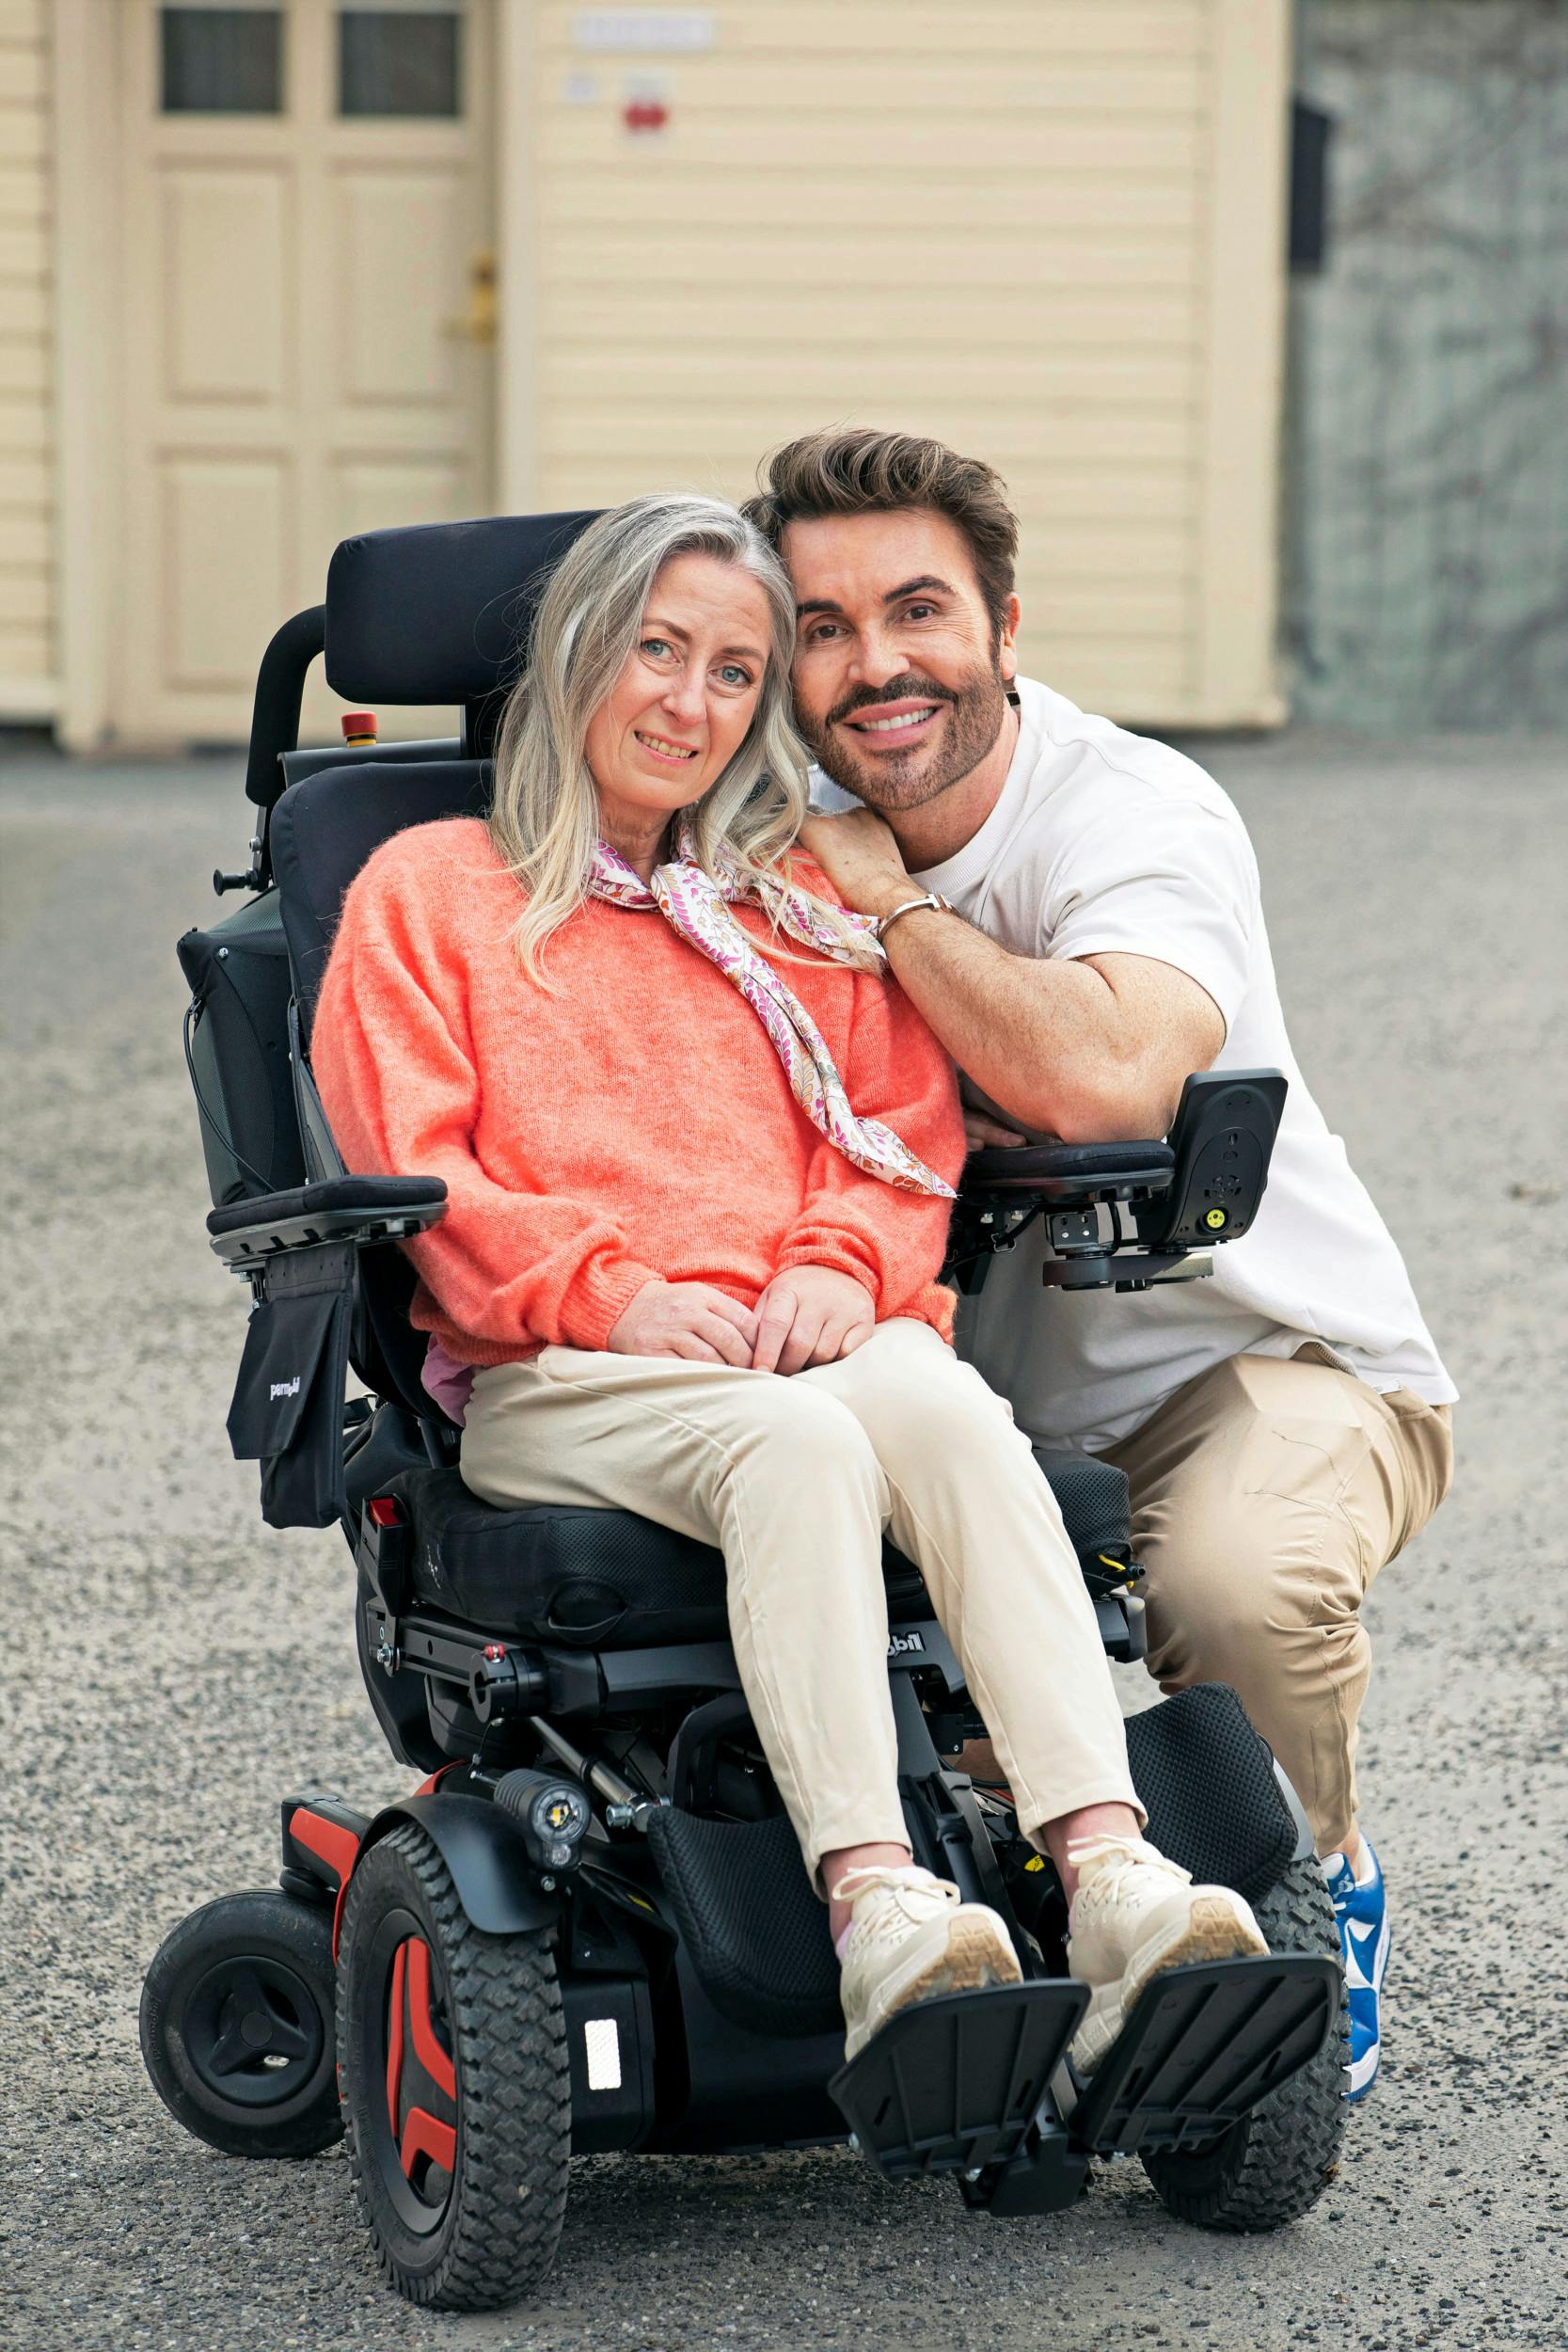 Hanne er ramt af sygdommen ALS. Den har revet hendes aktive liv væk på kun et år. Men der er stadig lyspunkter. Som da hun besøgte stylisten Jan Thomas, som fik hende til at stråle.